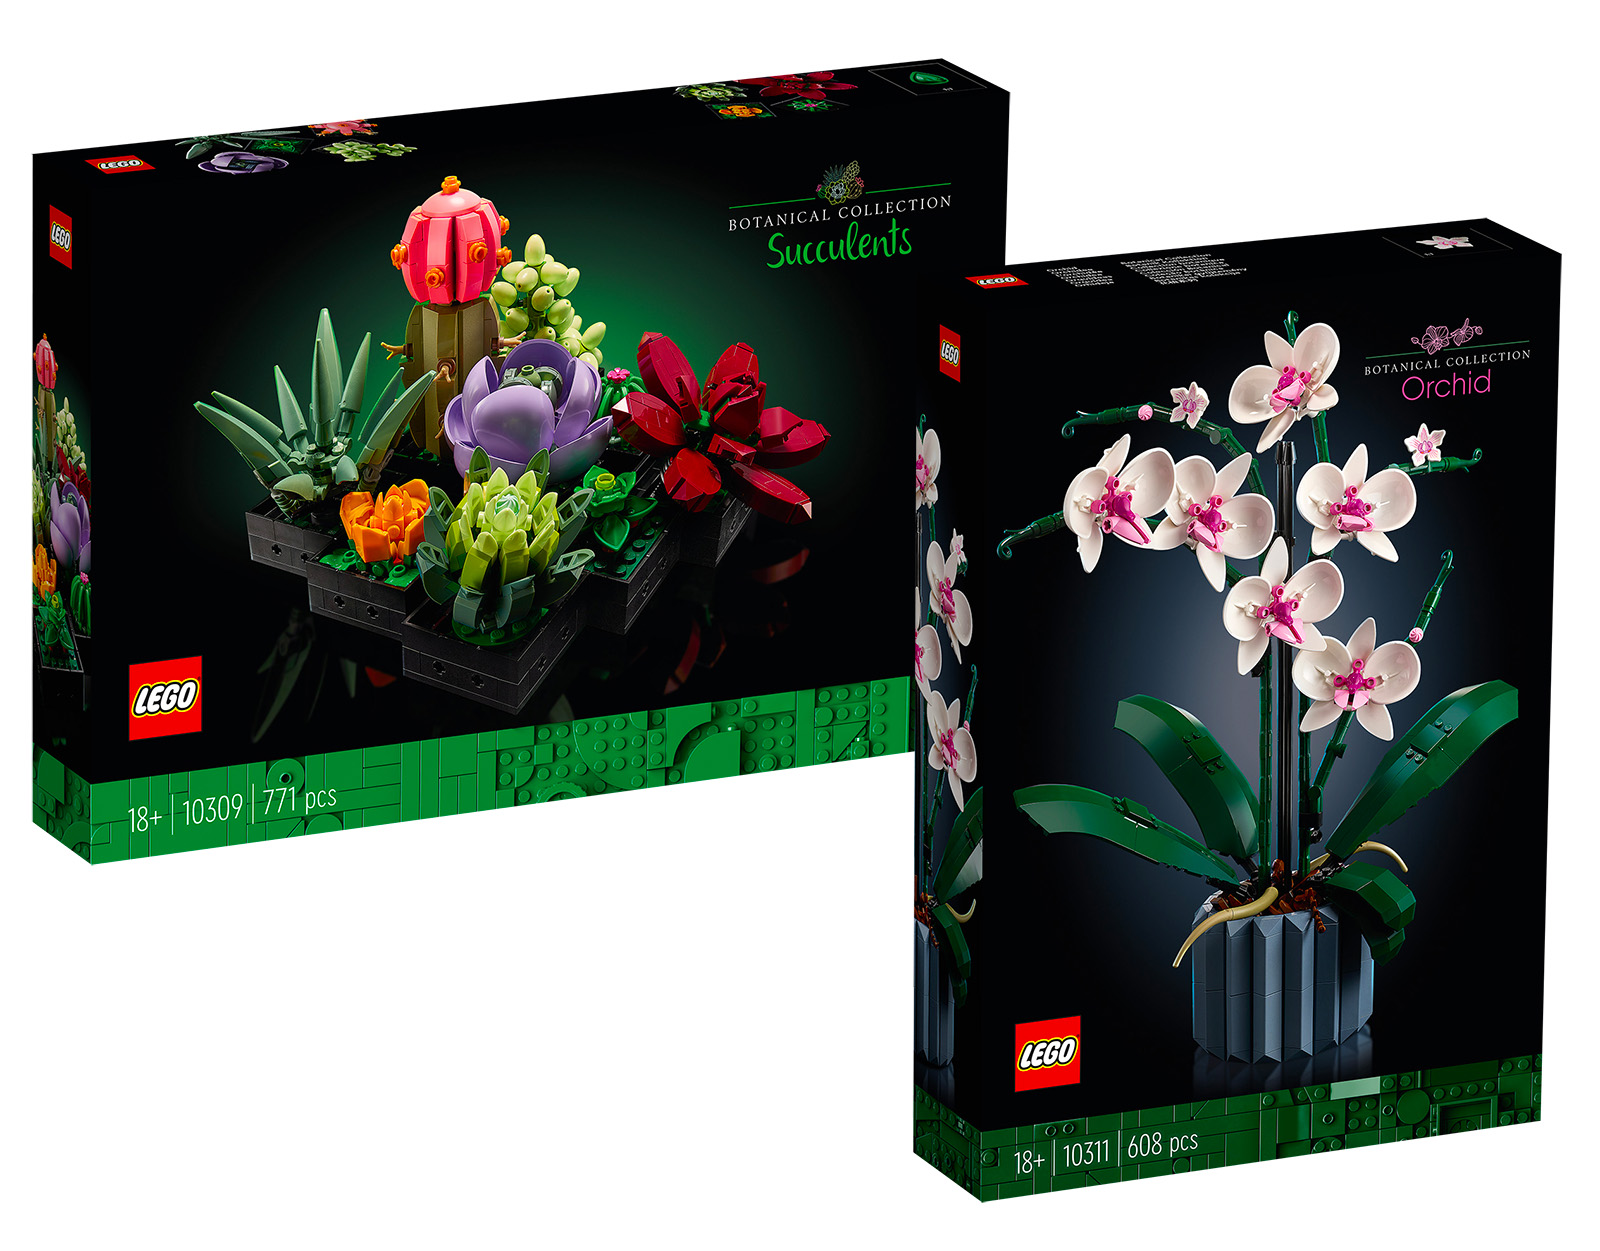 La nouvelle gamme botanique de Lego dévoile un incroyable bouquet